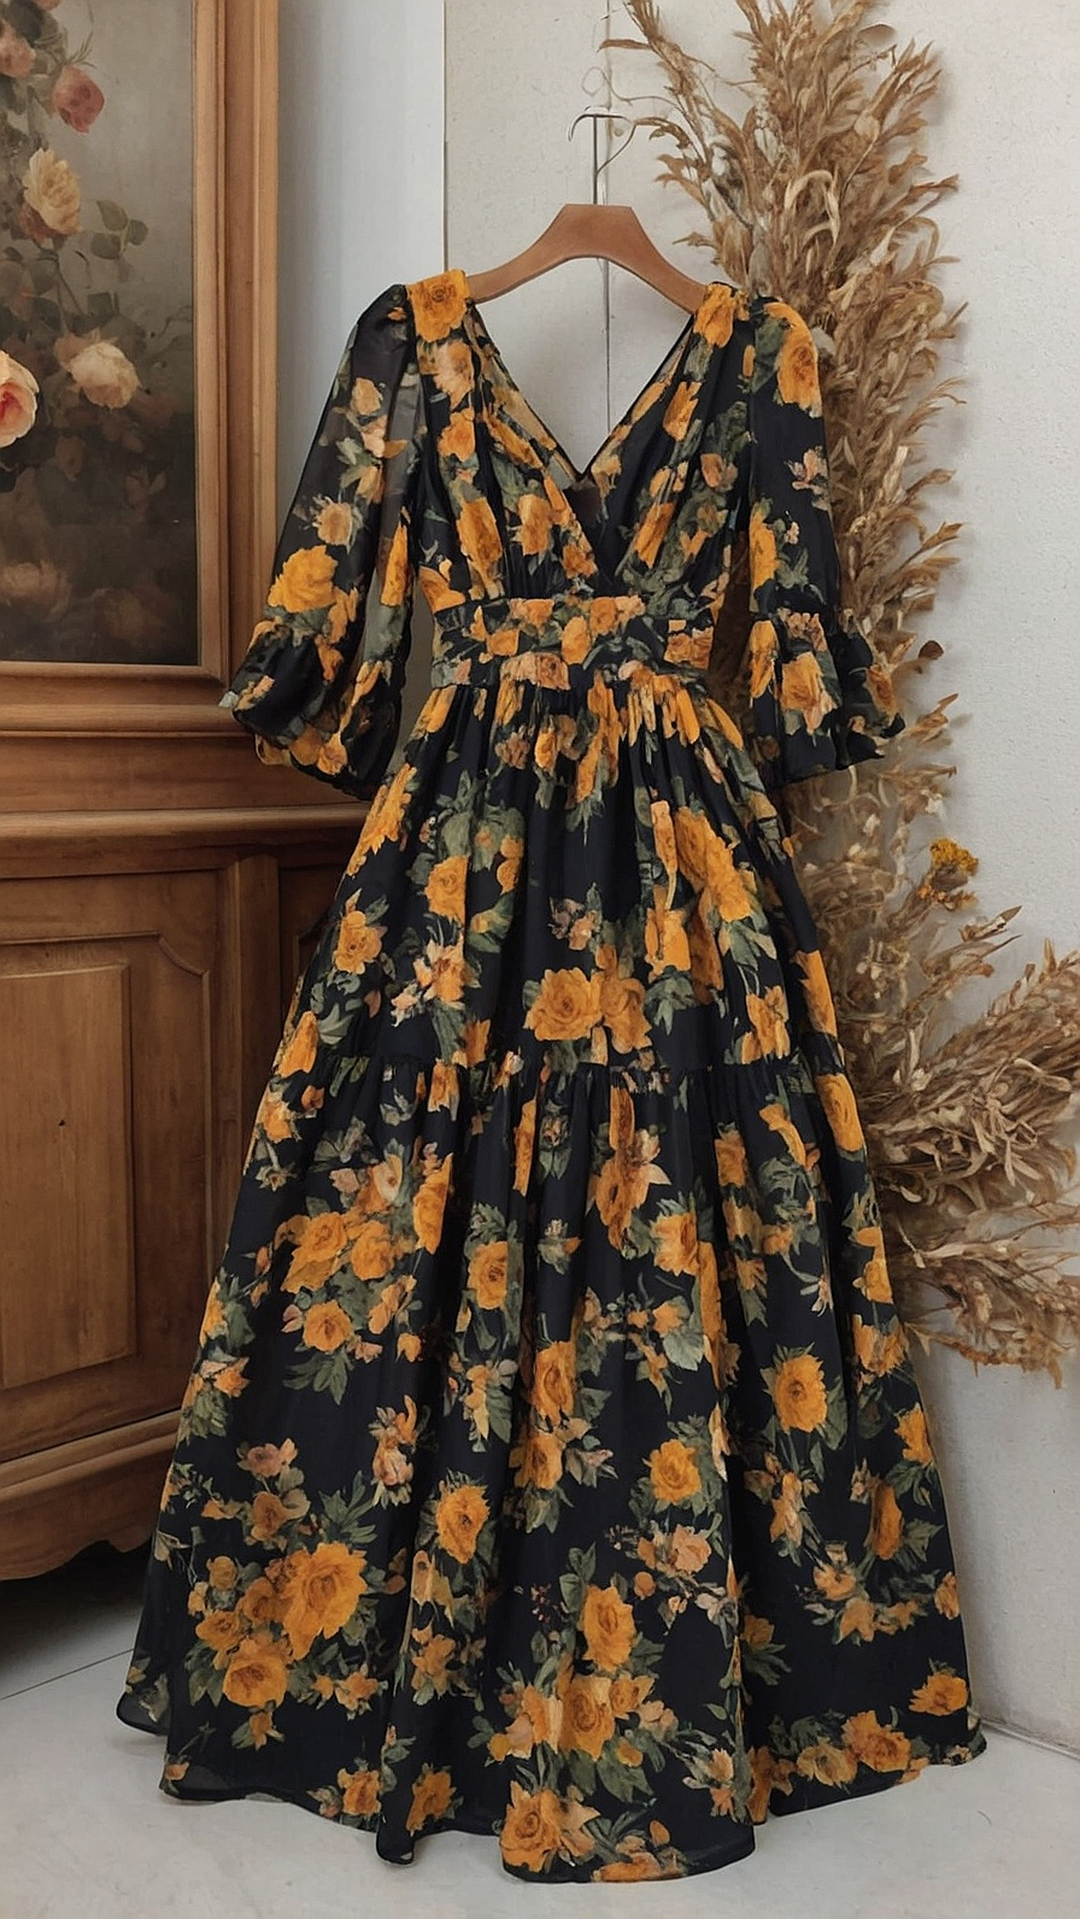 Springtime Splendor: Floral Maxi Dress Trends